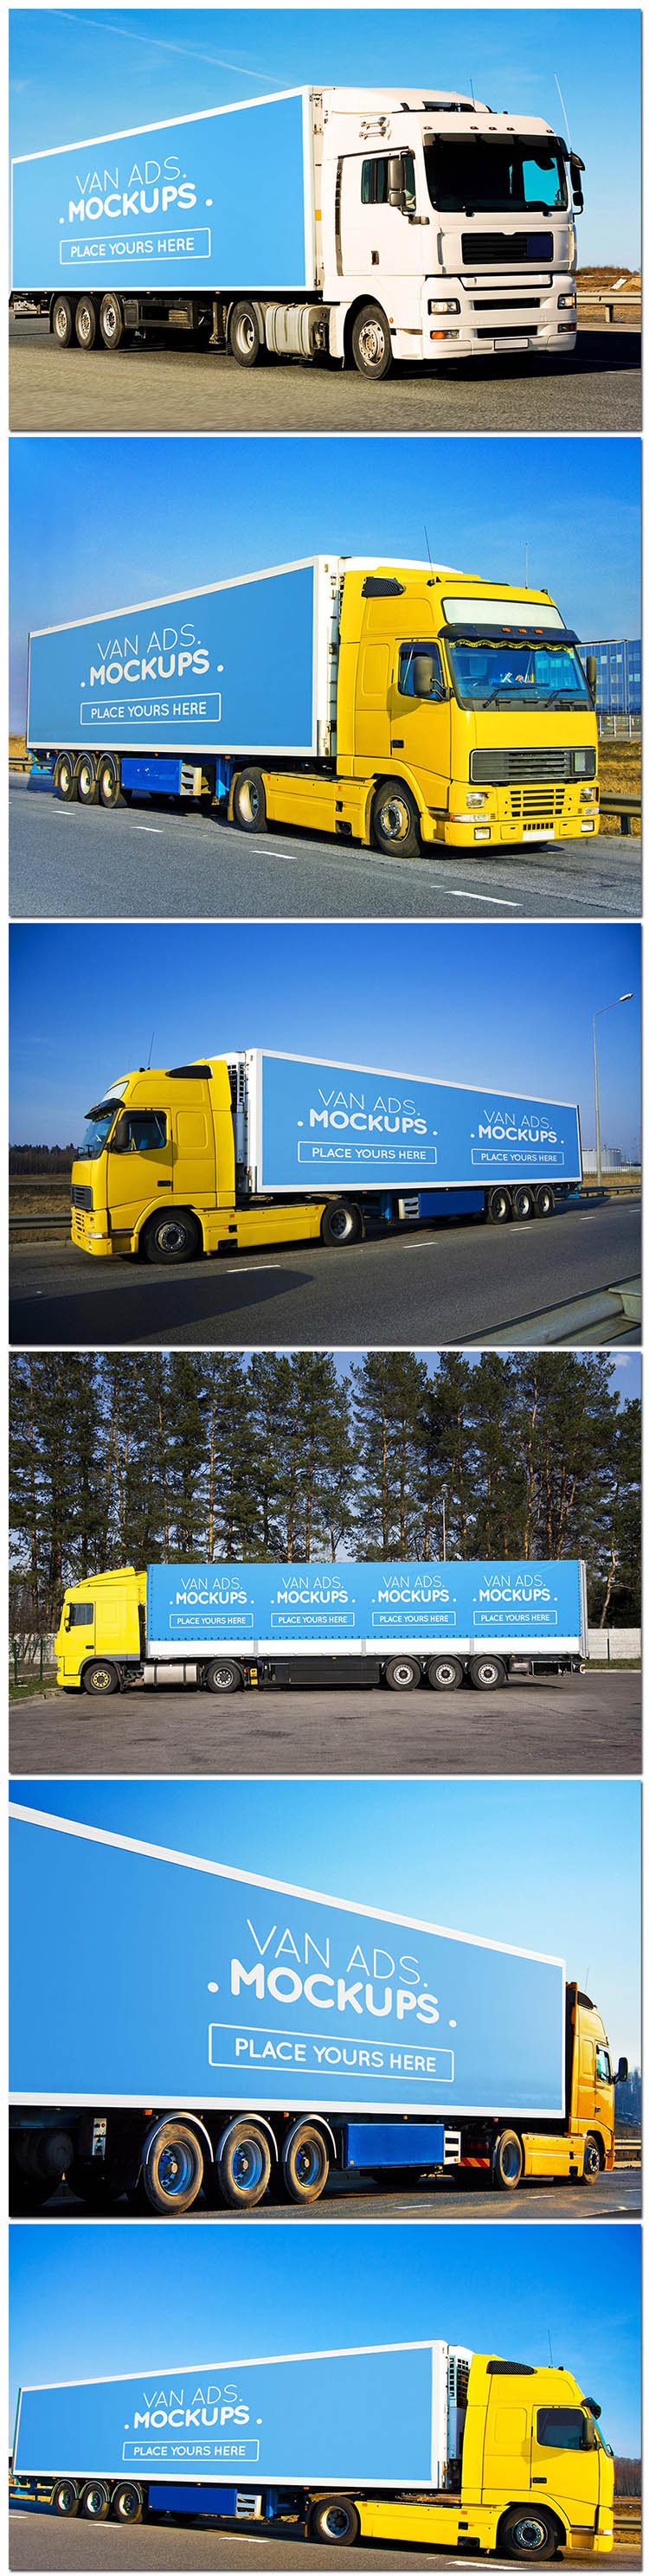 商业厢式大货车卡车身涂装广告展示样机模型场景海报素材设计模板